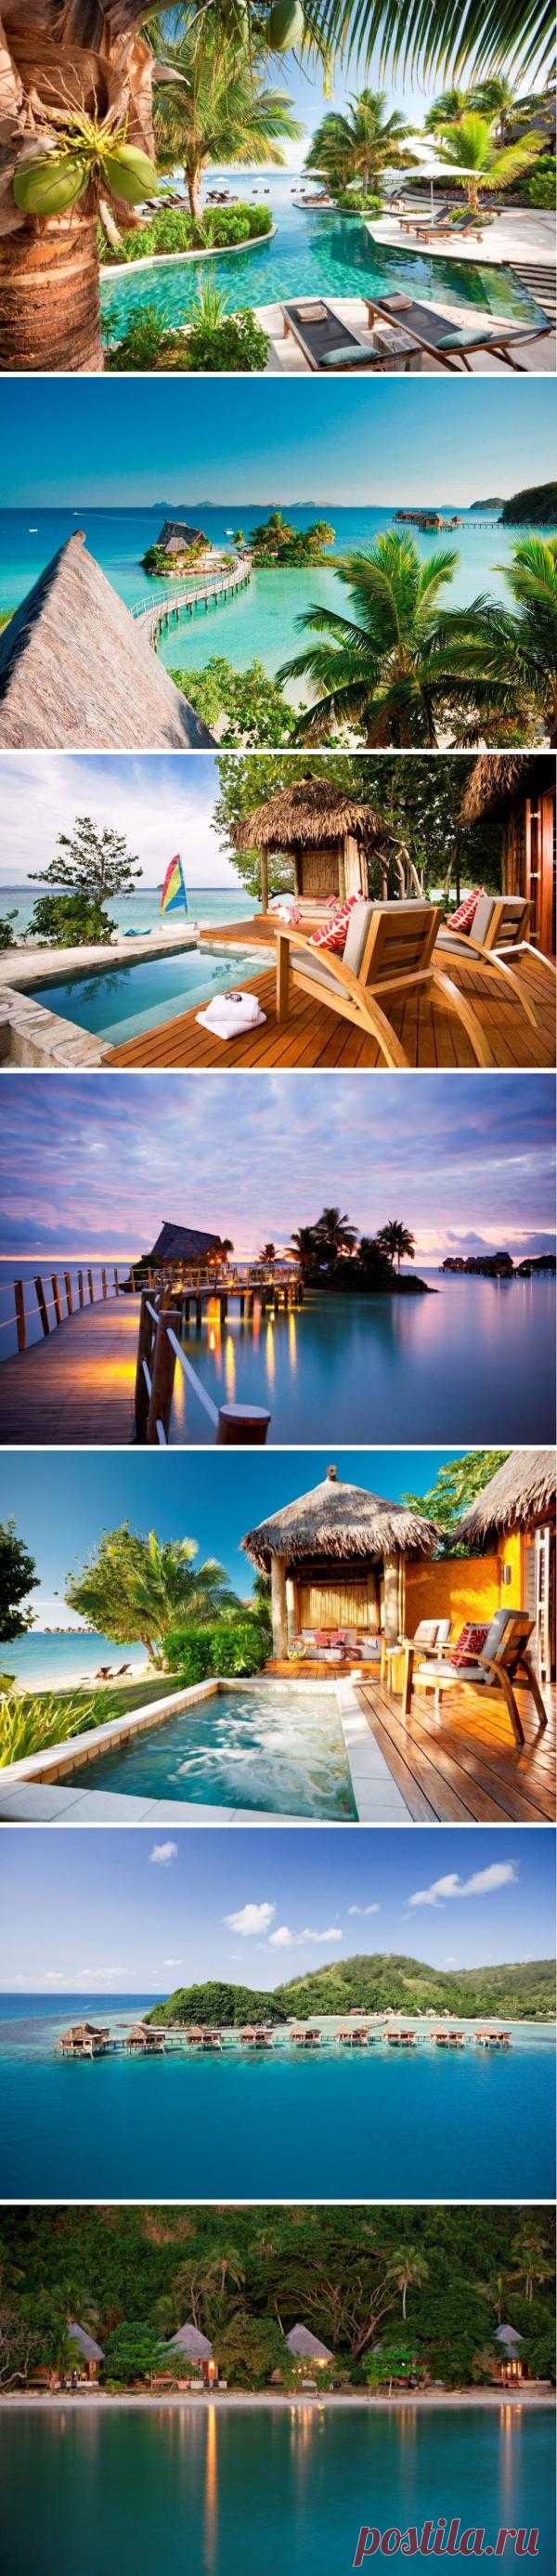 Истинный экзотический рай, окруженный чистыми голубыми водами и нетронутыми песчаными пляжами, удивительными тропическими цветами и пышной растительностью. Отдых здесь не из дешёвых. Наслаждайтесь фото! Курорт Likuliku Lagoon Resort, Фиджи